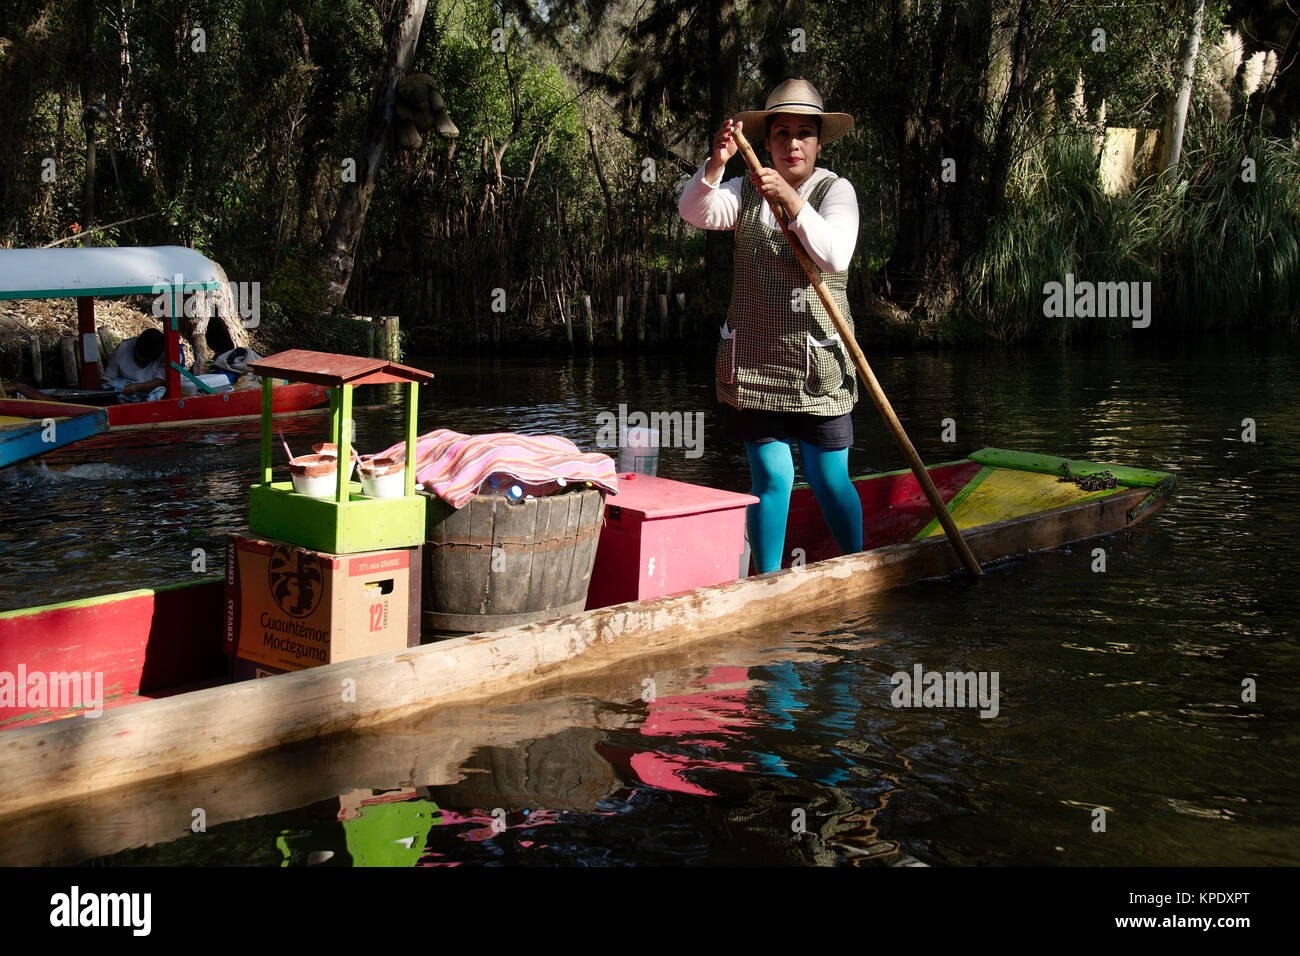 Xochimilco, Mexiko City, Mexiko - 2017: eine Frau in einer trajinera (ein lokaler Art des Bootes) Verkauft kalte Getränke von Menschen in anderen trajineras auf einem Kanal Stockfoto